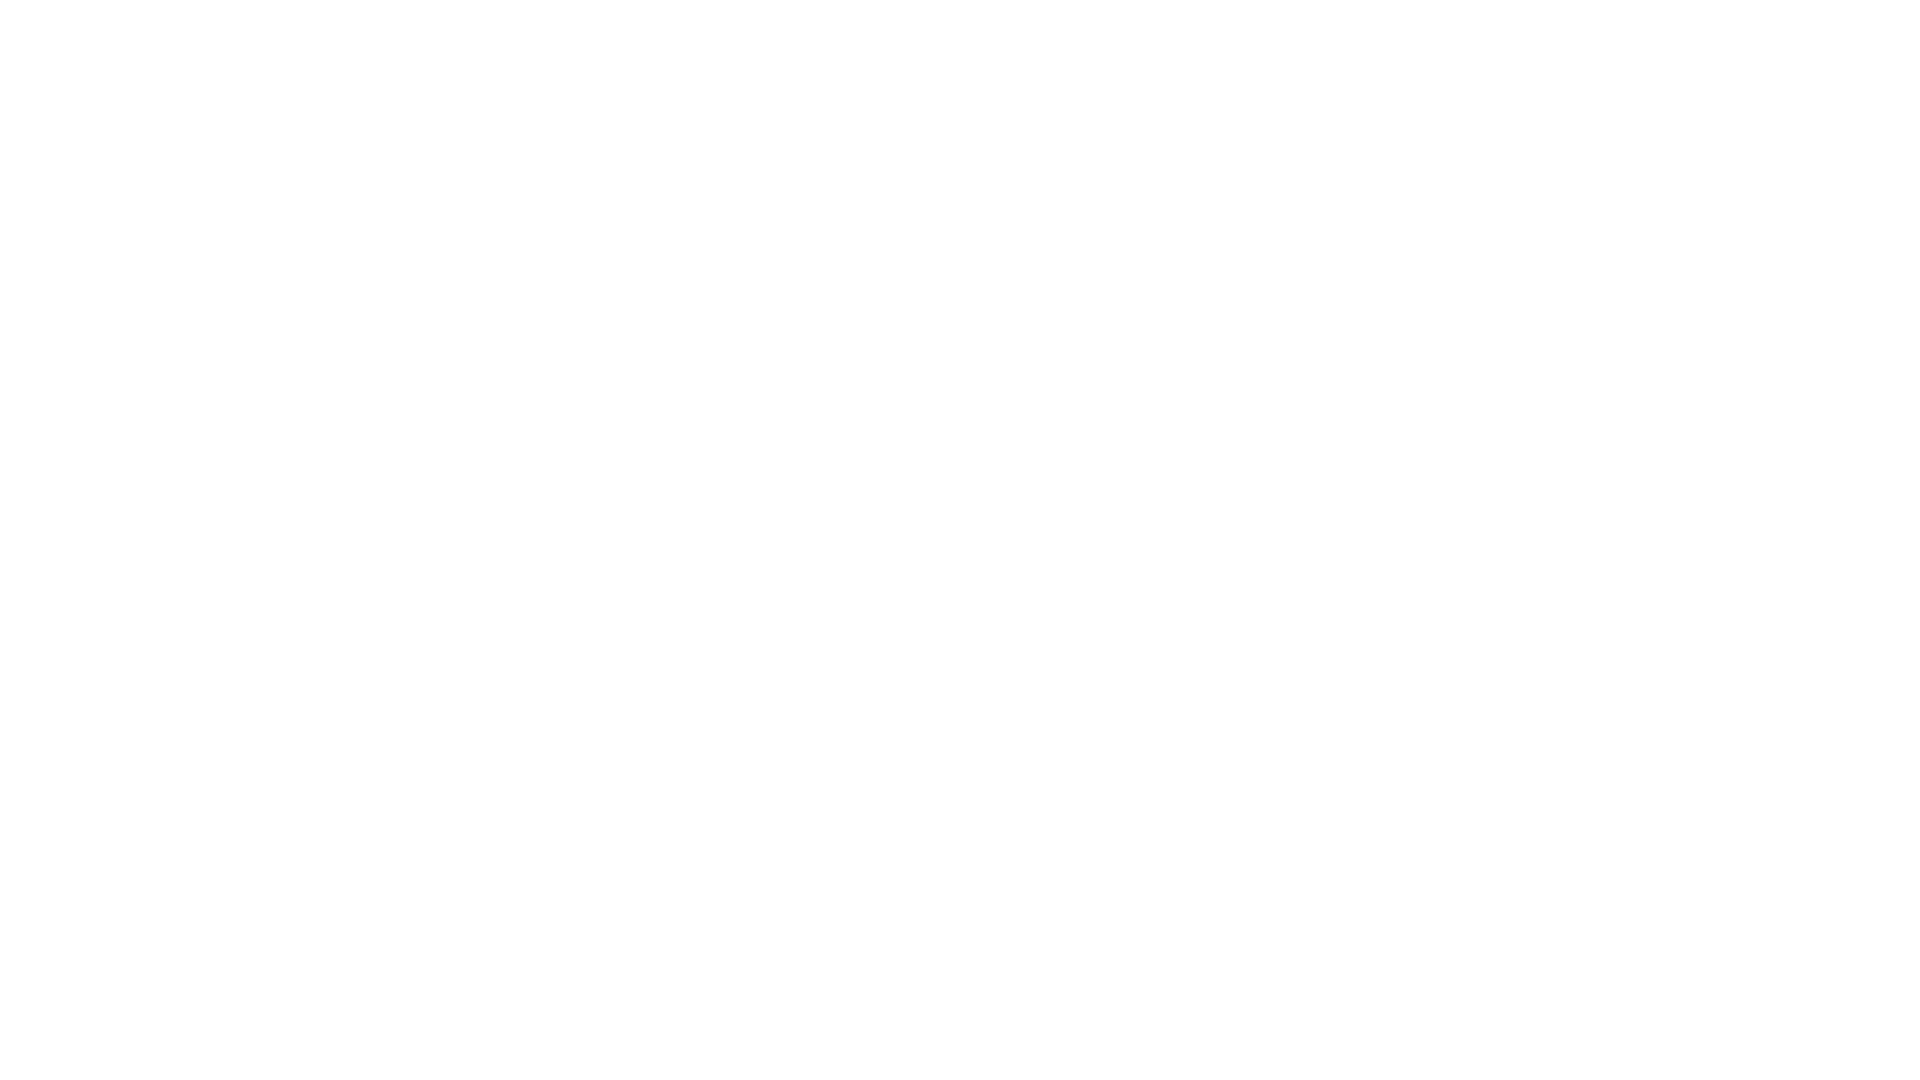 Apollo Insurance Group